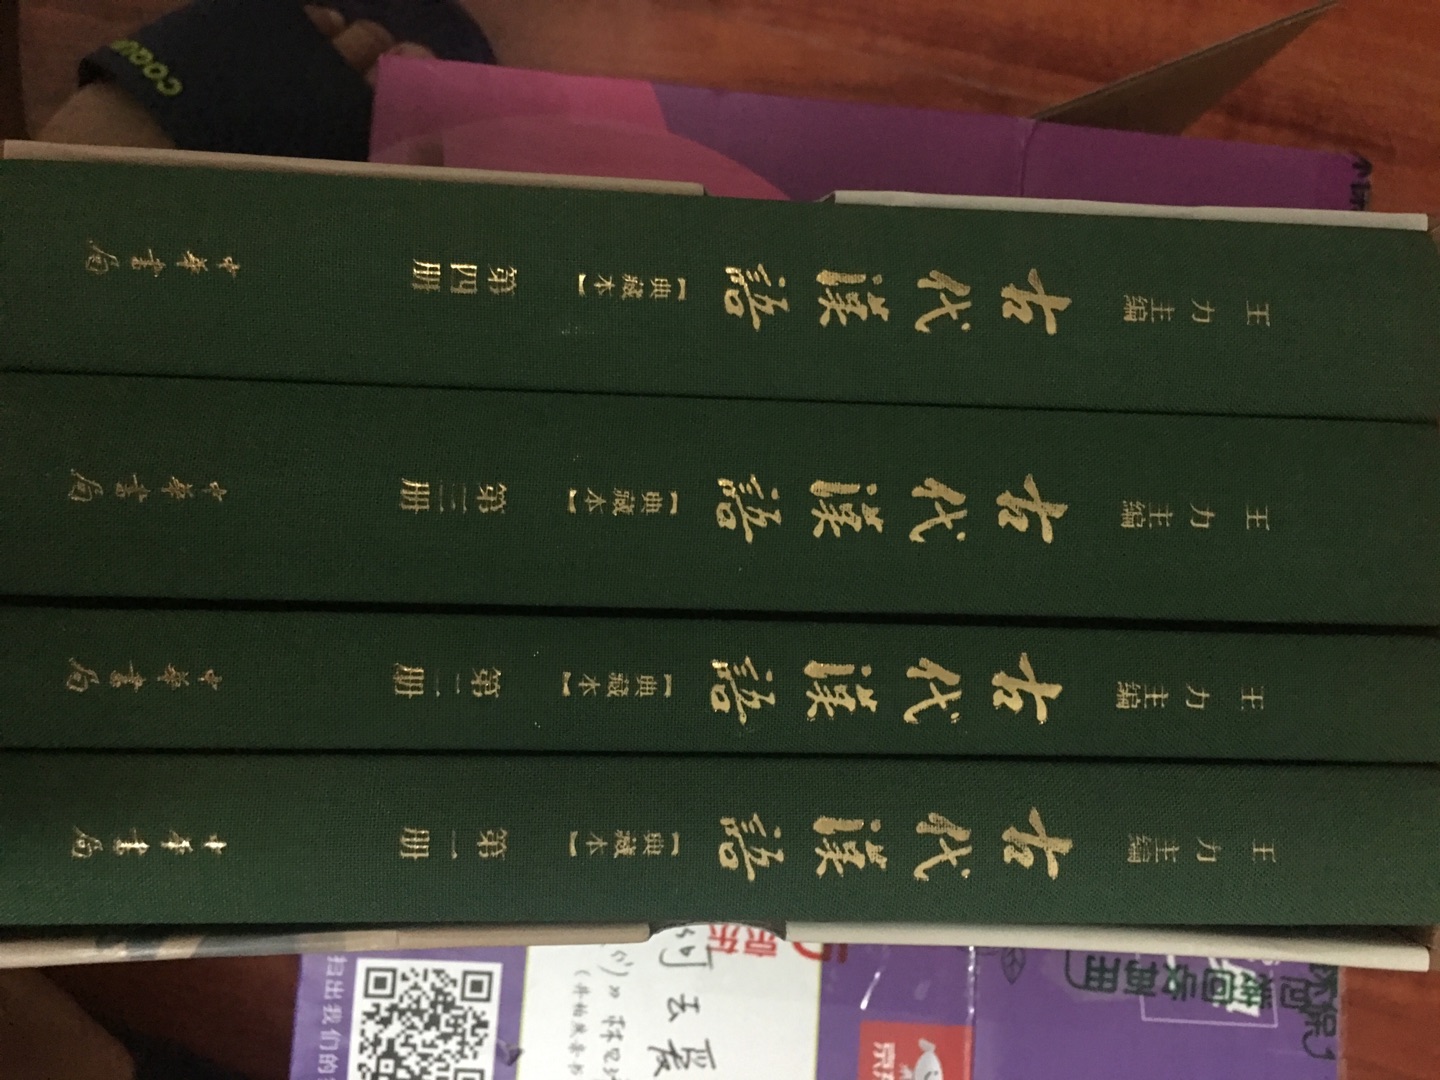 一直想让自己的古文阅读能力更上层楼 上次在苏州诚品书店看到还不错，就买了